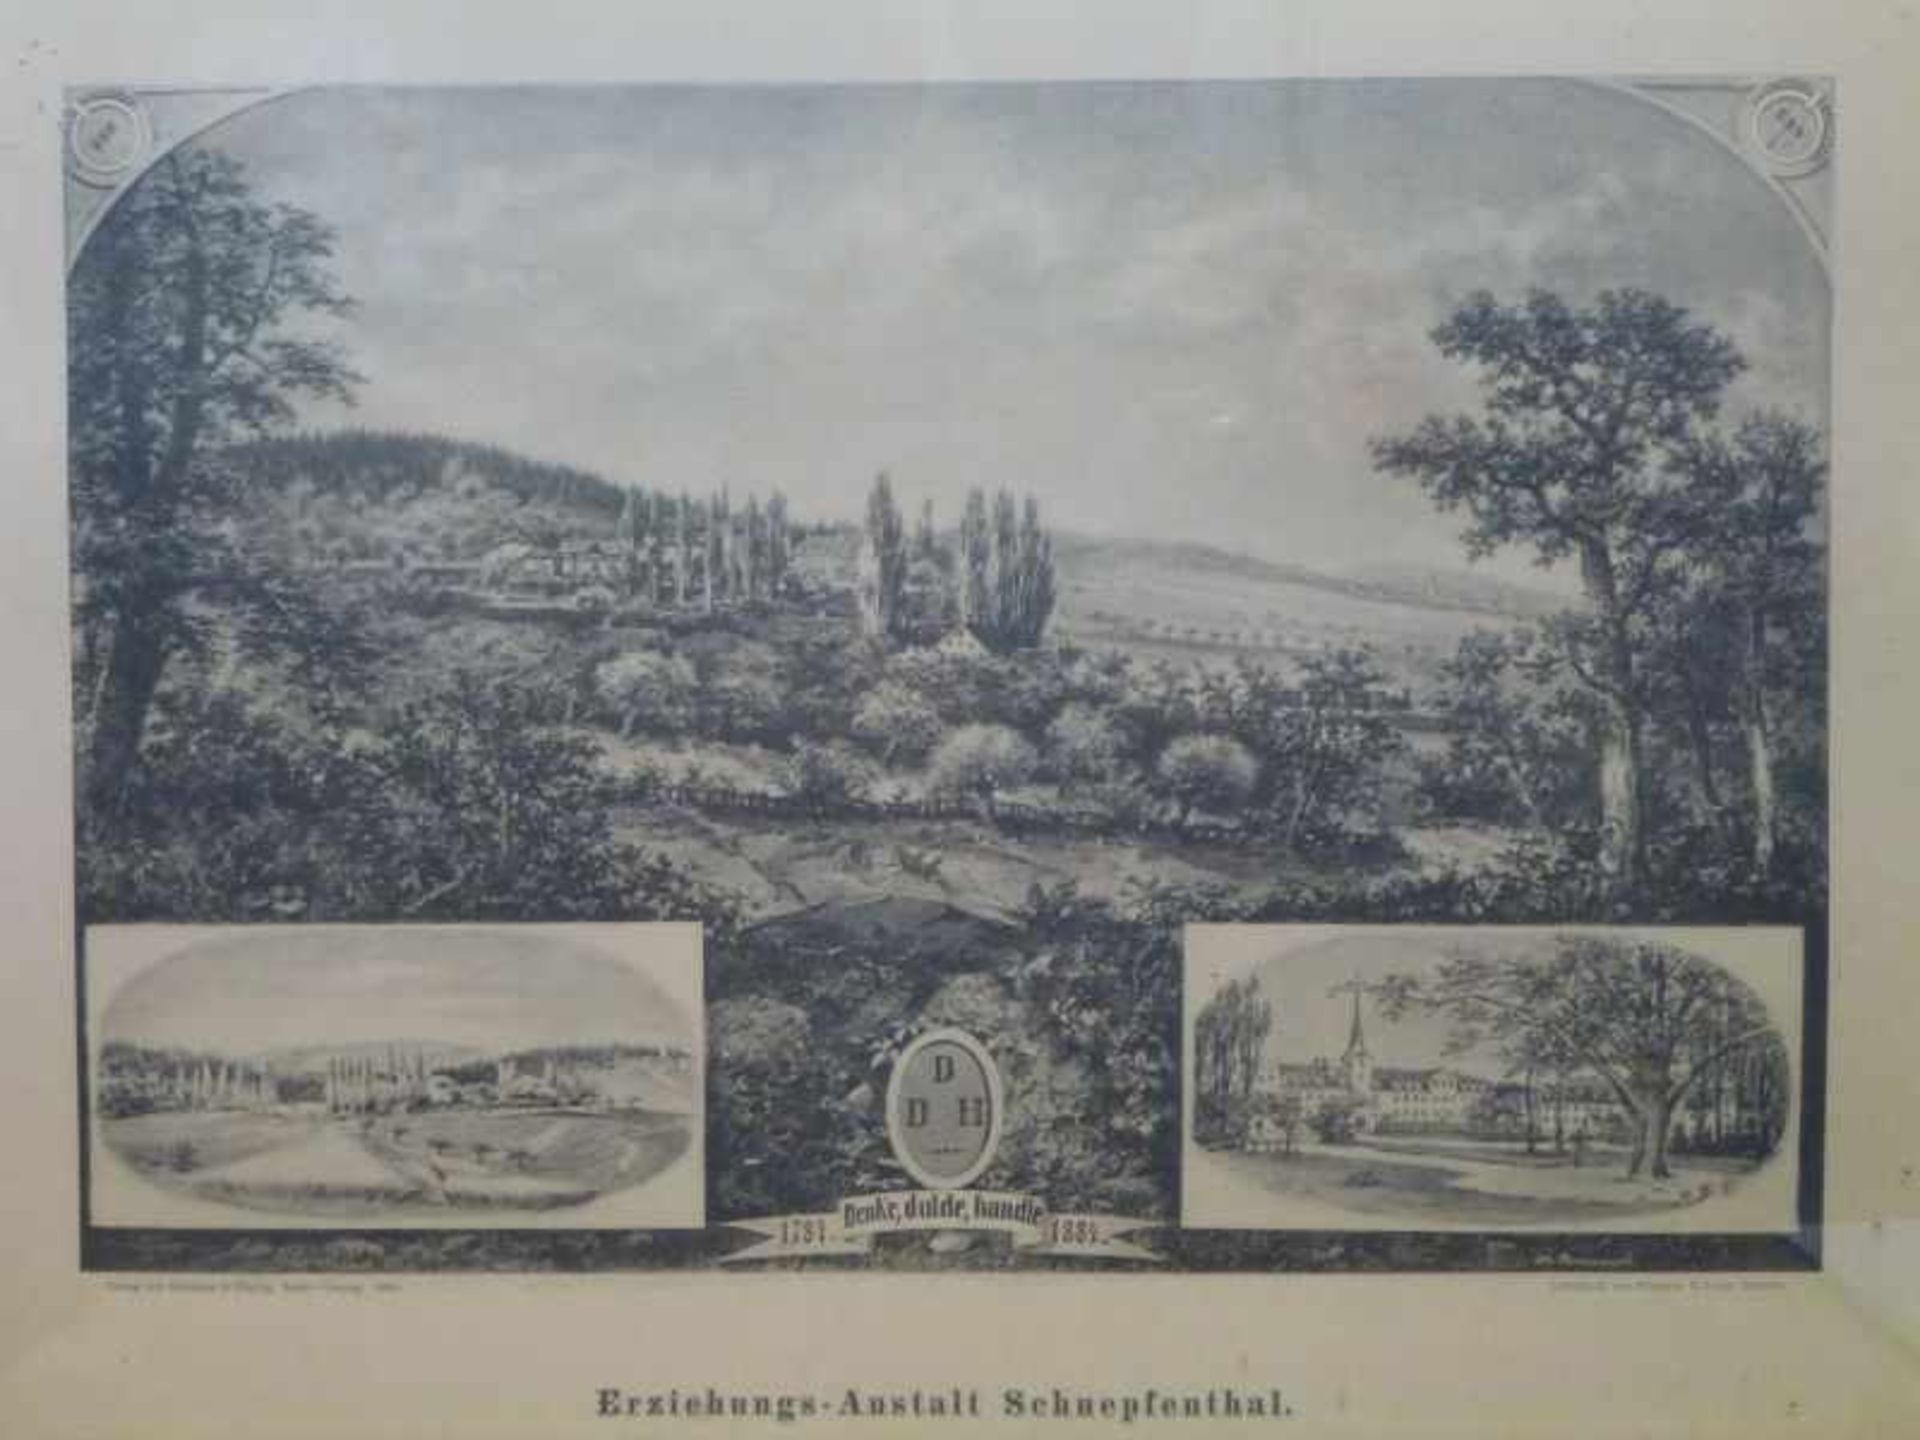 Lichtdruck "Erziehungsanstalt Schnepfenthal"